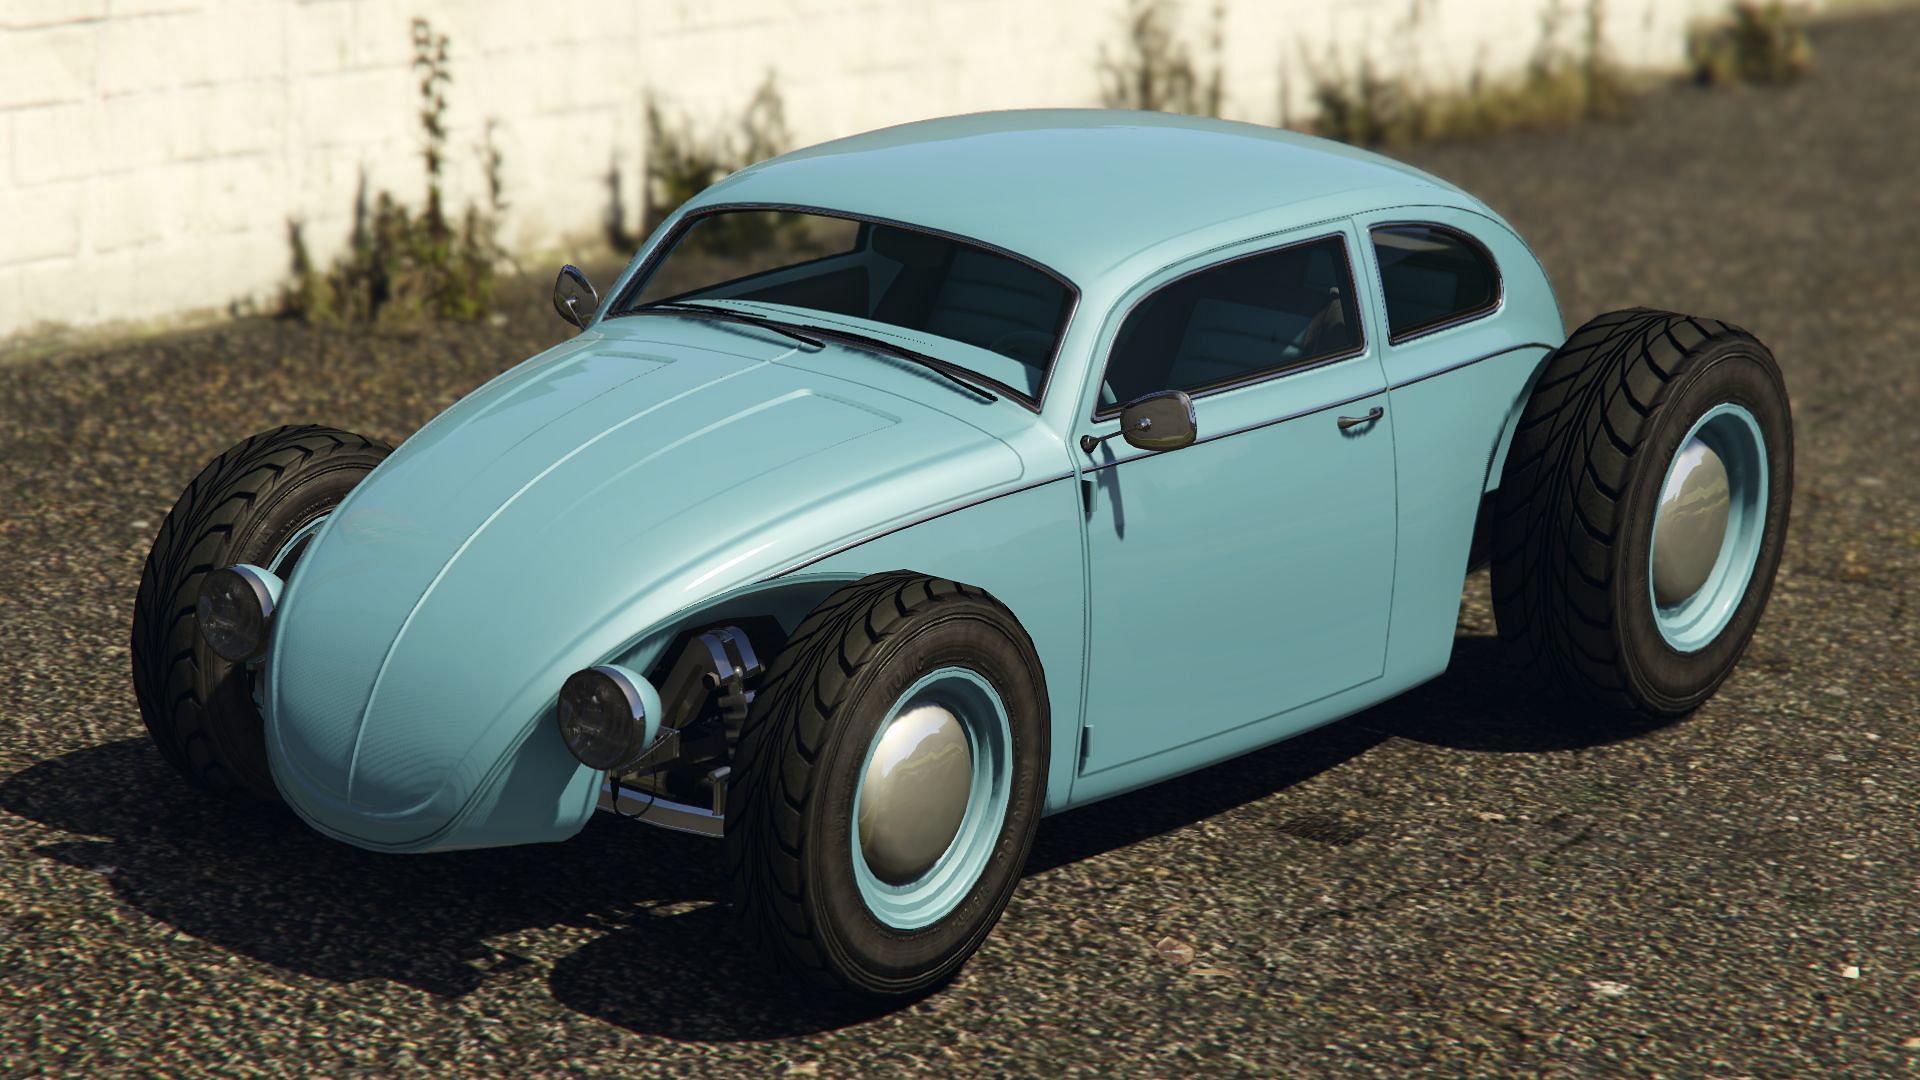 The Weevil Custom in GTA Online (Image via Rockstar Games)